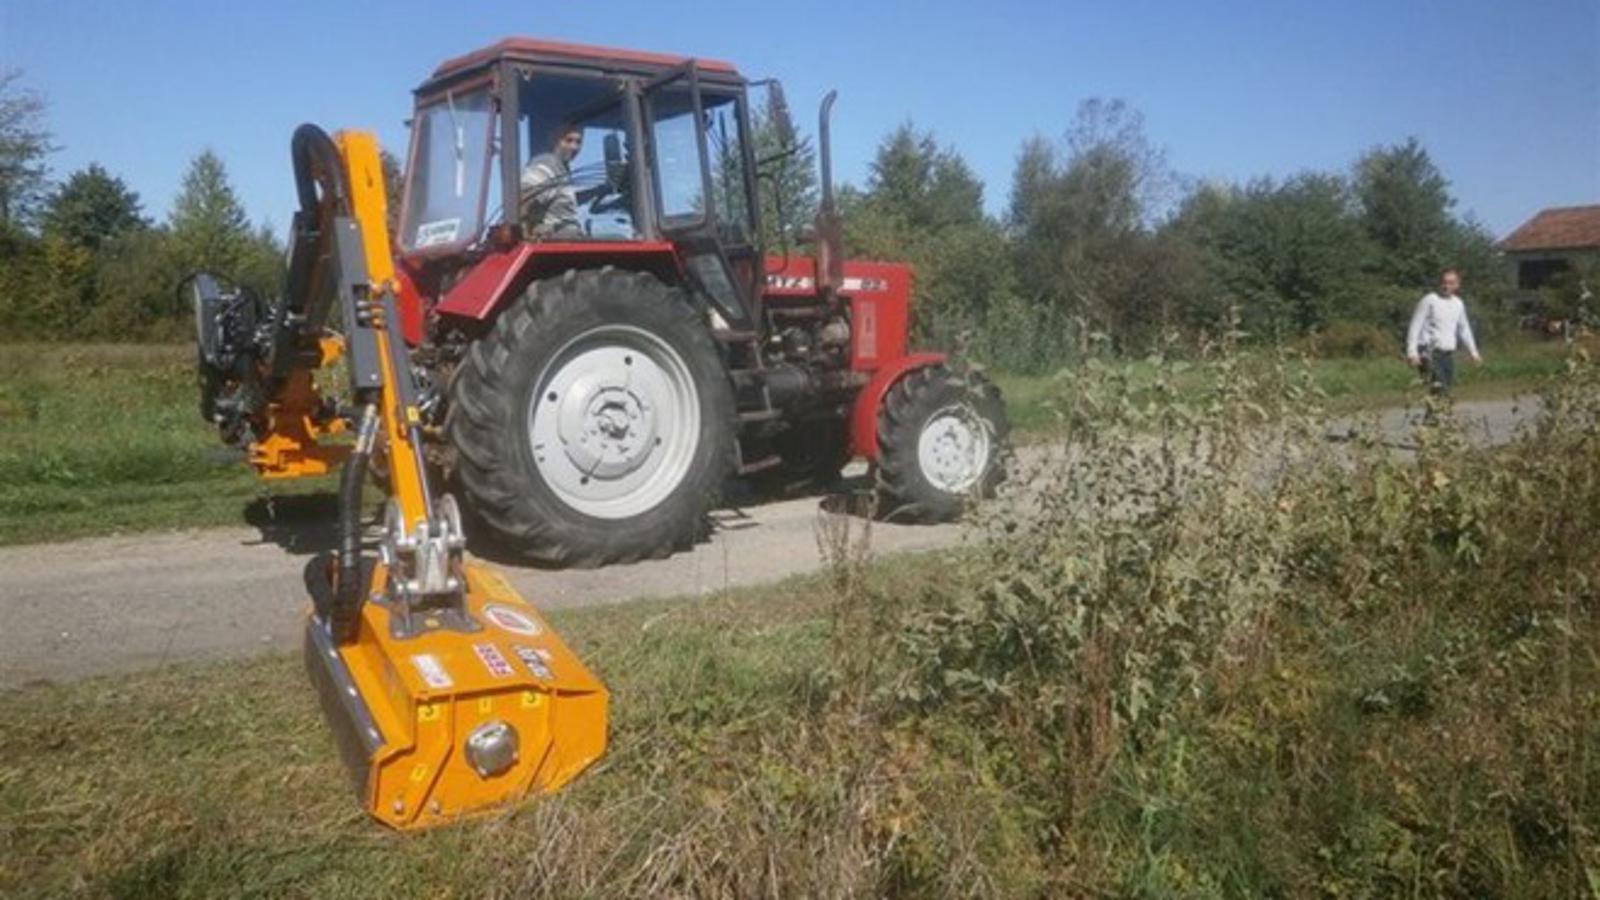 Traktorski malčer vrijedan 121 tisuću kuna